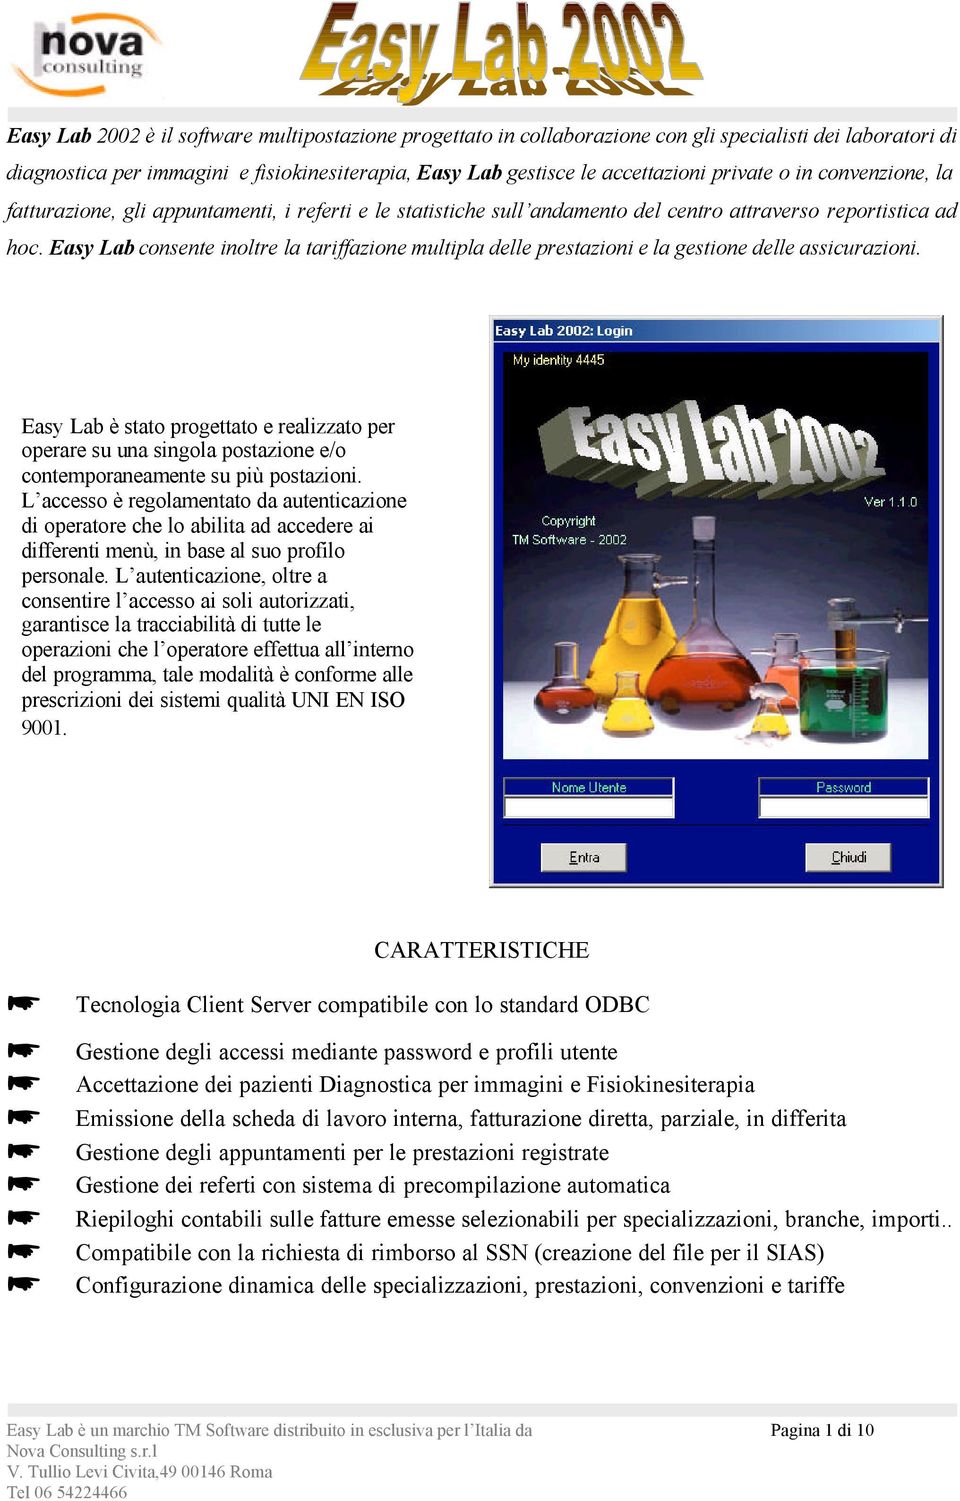 Easy Lab consente inoltre la tariffazione multipla delle prestazioni e la gestione delle assicurazioni.